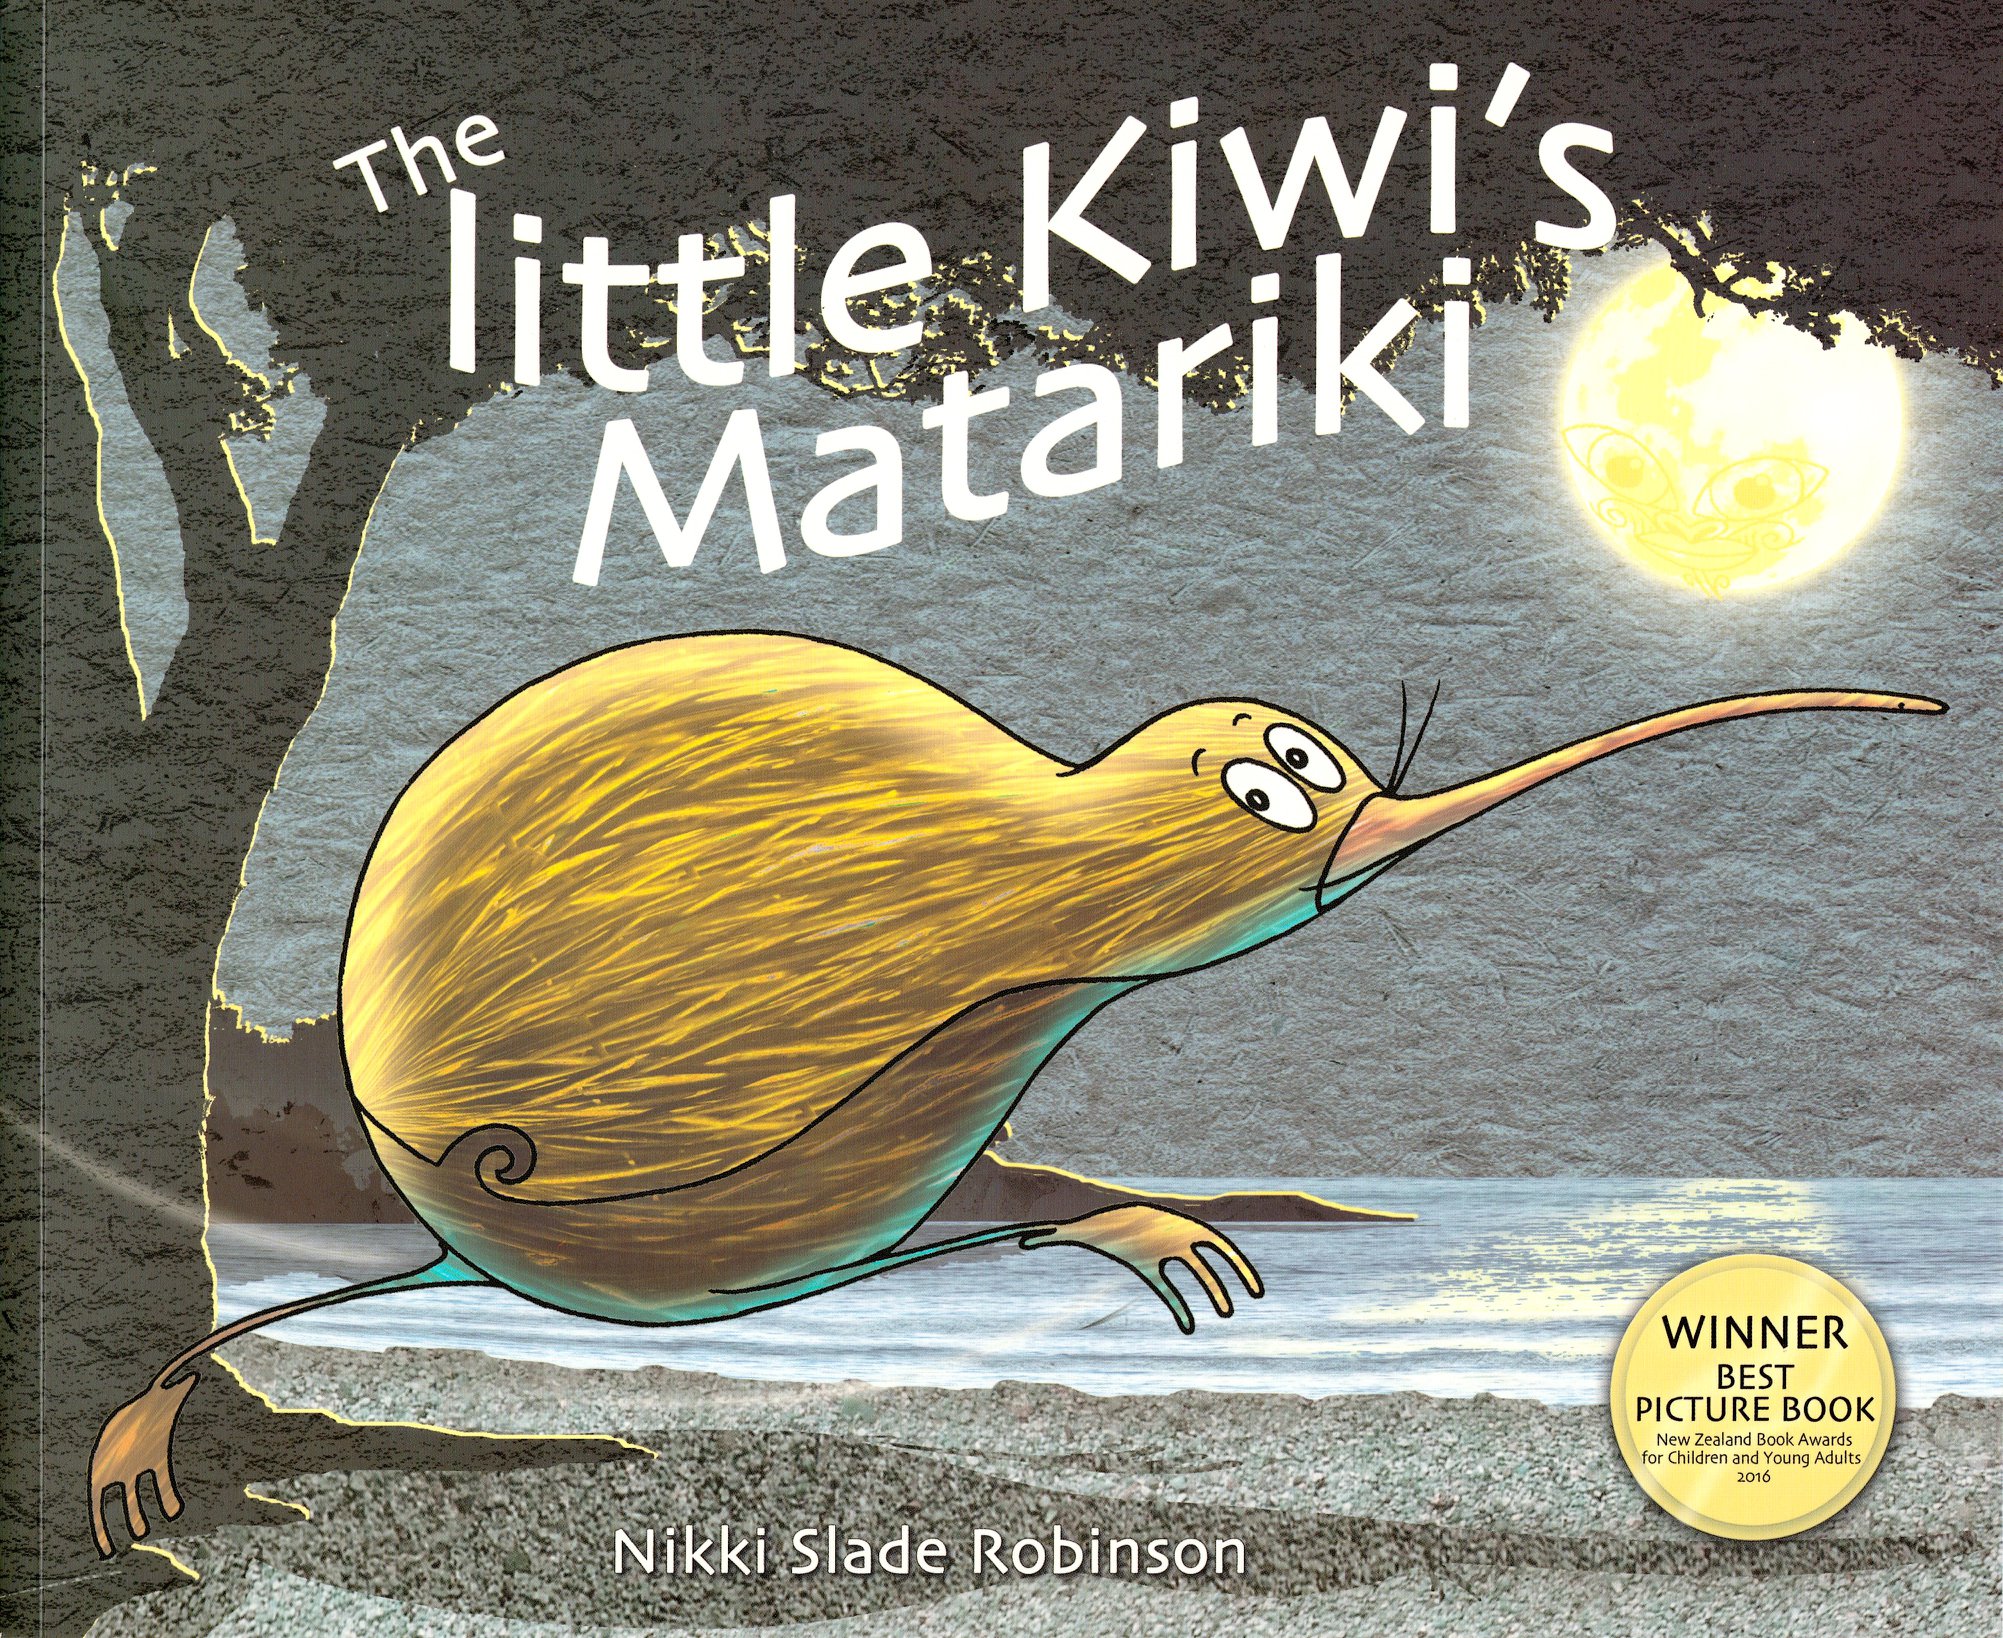 The Little Kiwis Matariki book